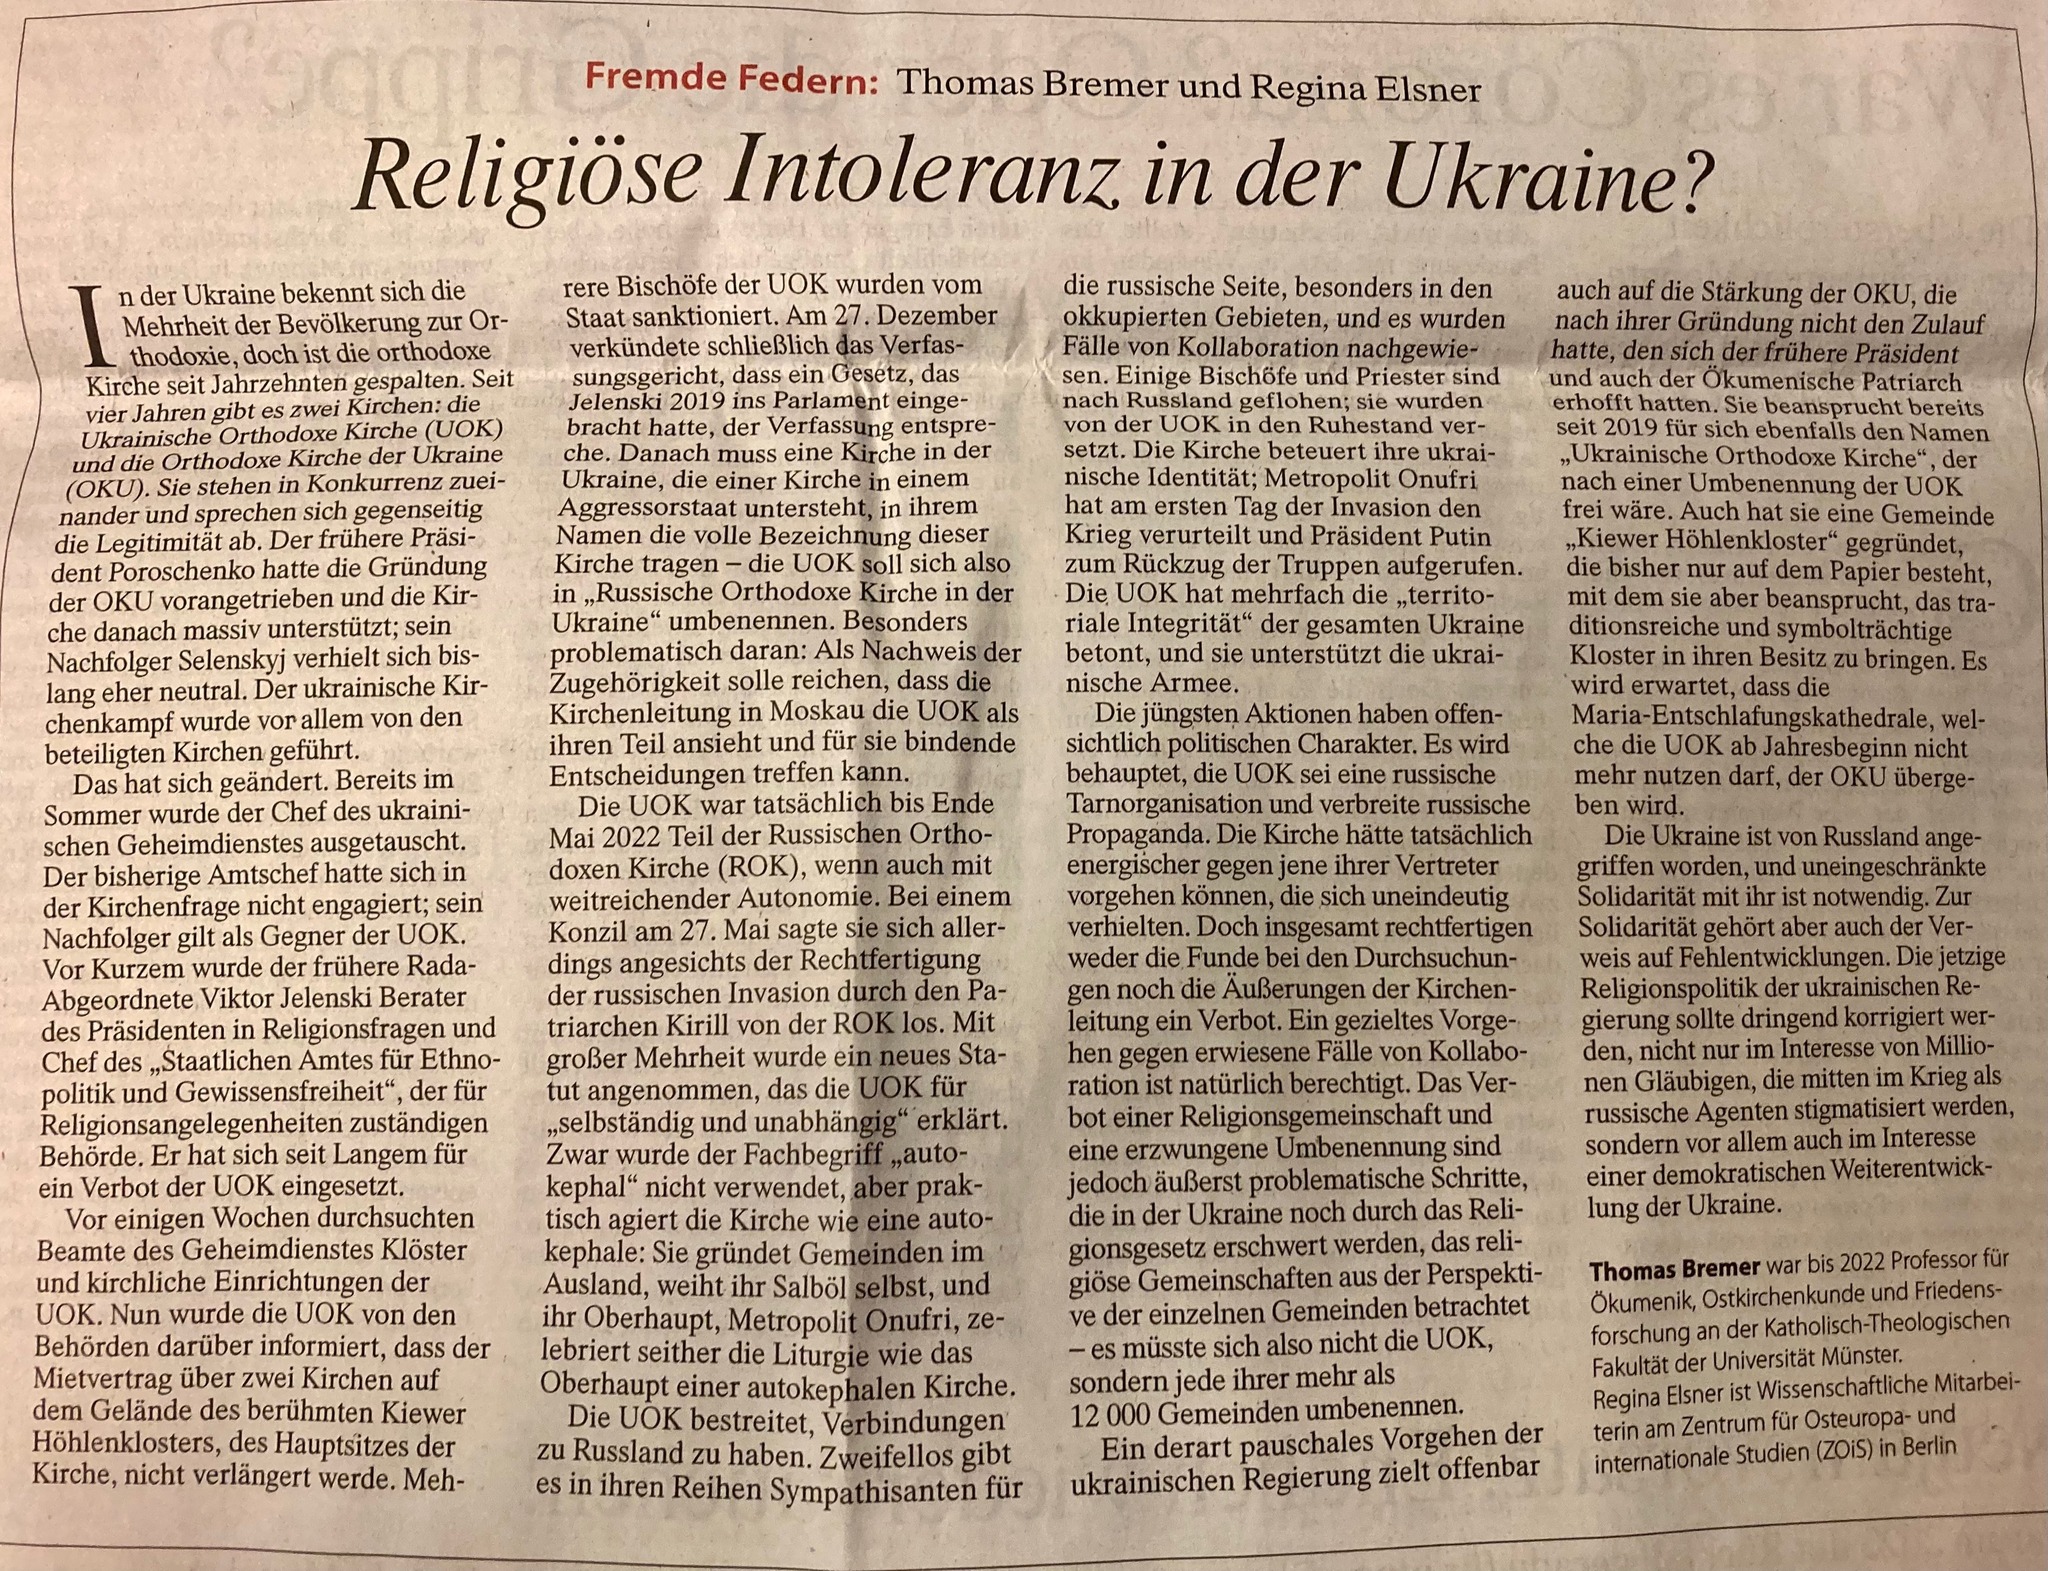 Немецкое СМИ о гонениях на УПЦ: Религиозную политику нужно срочно исправить фото 1